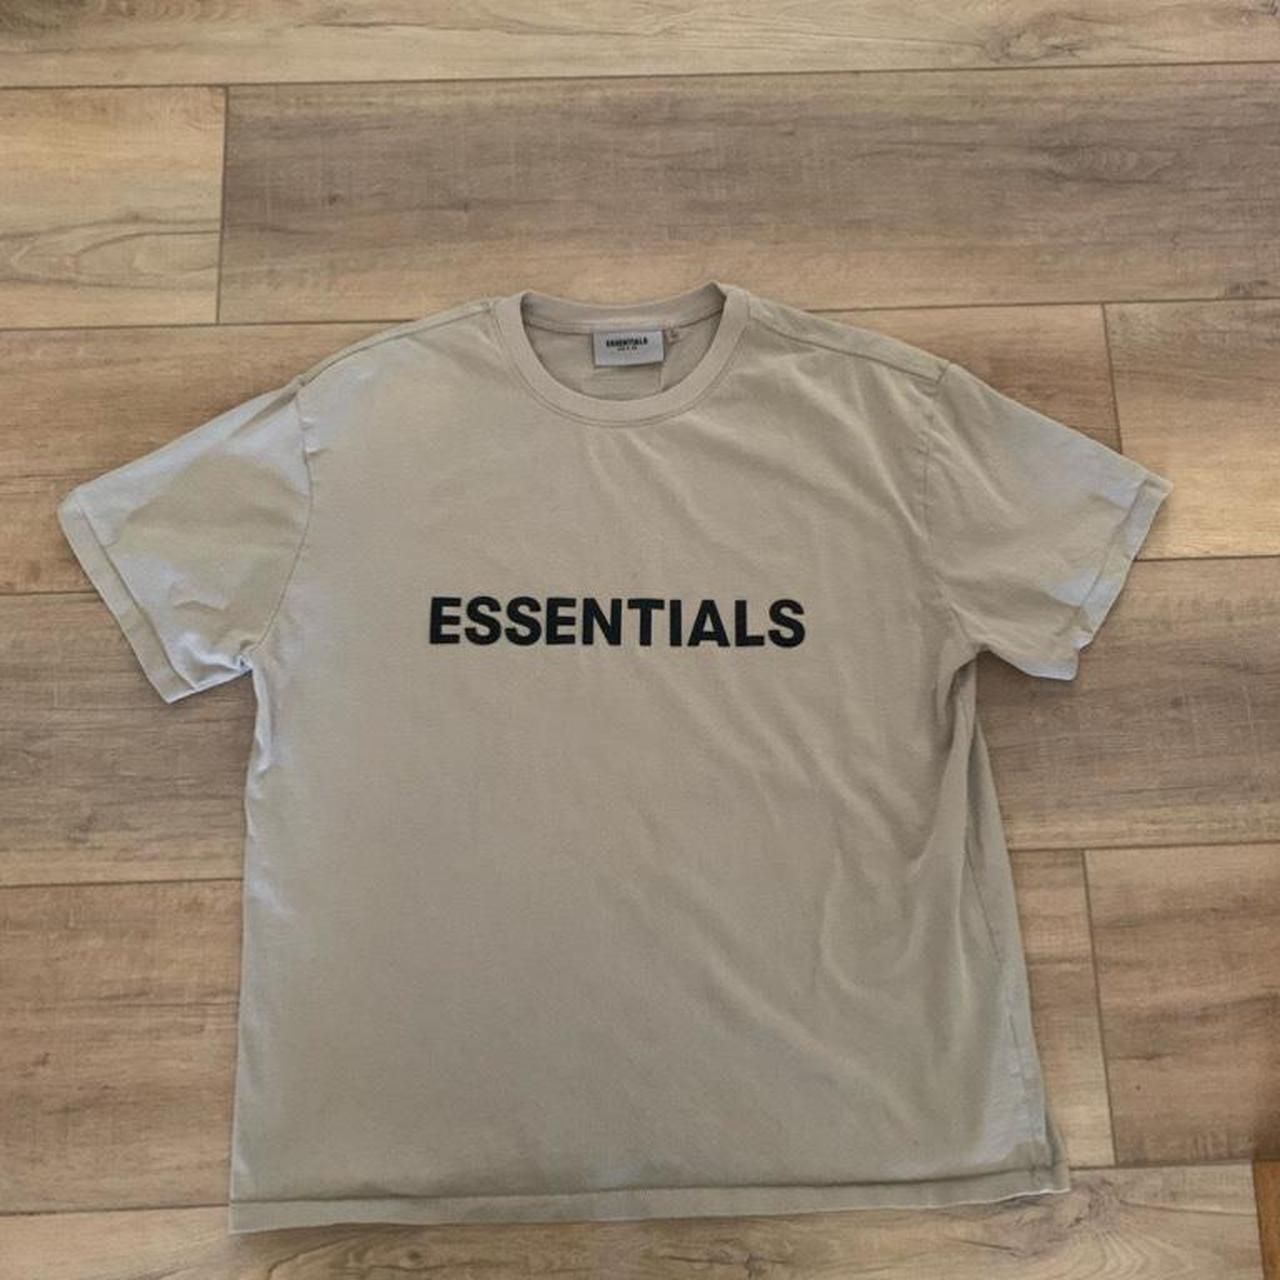 Tan Essentials t-shirt ESSENTIALS SIZE LARGE No... - Depop